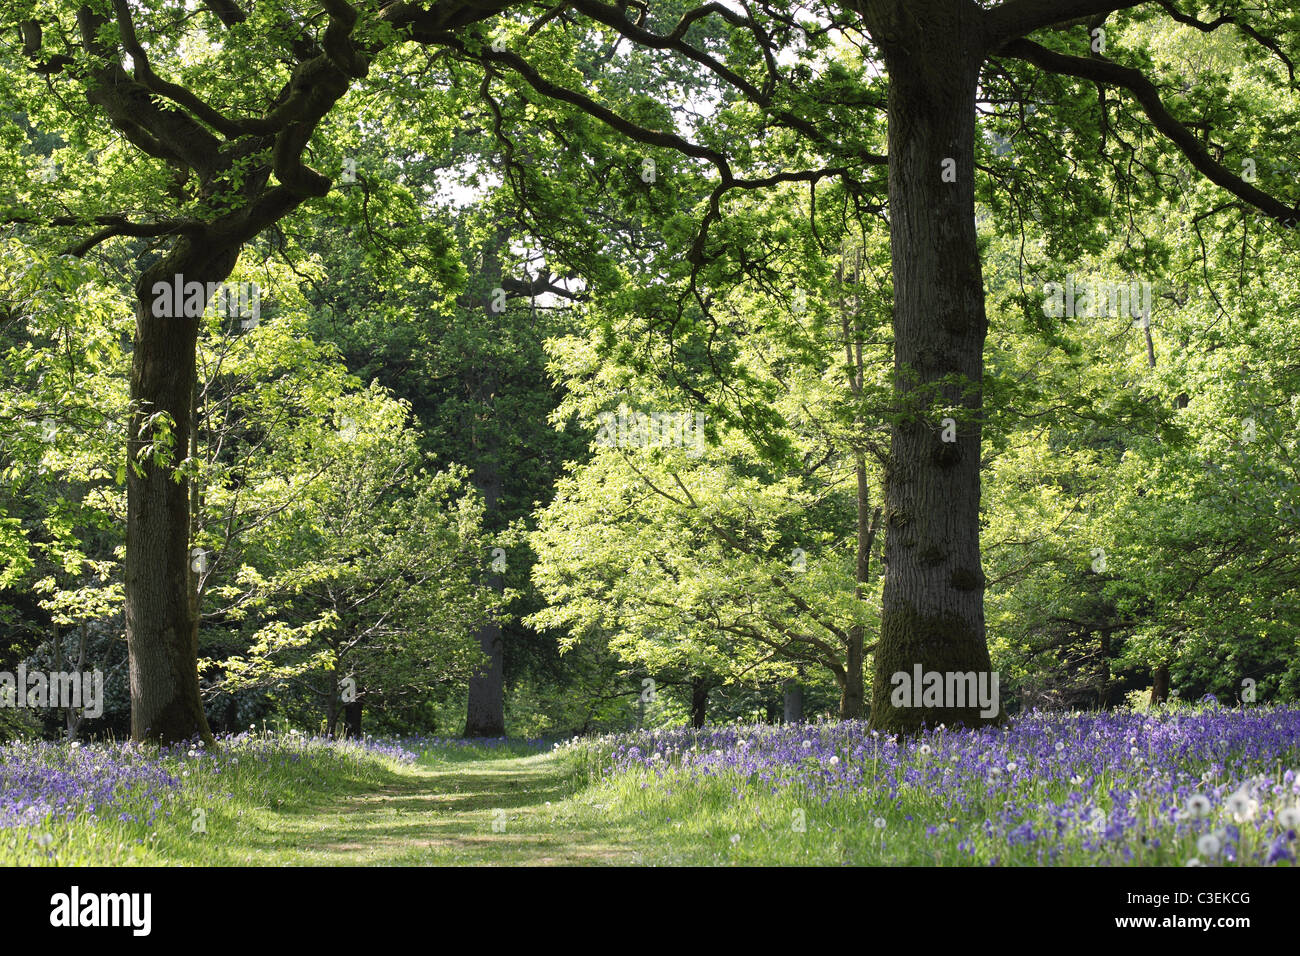 Chemin à travers les cloches fleurissent au printemps à l'arboretum Westonbirt, Gloucestershire, Angleterre, Royaume-Uni Banque D'Images